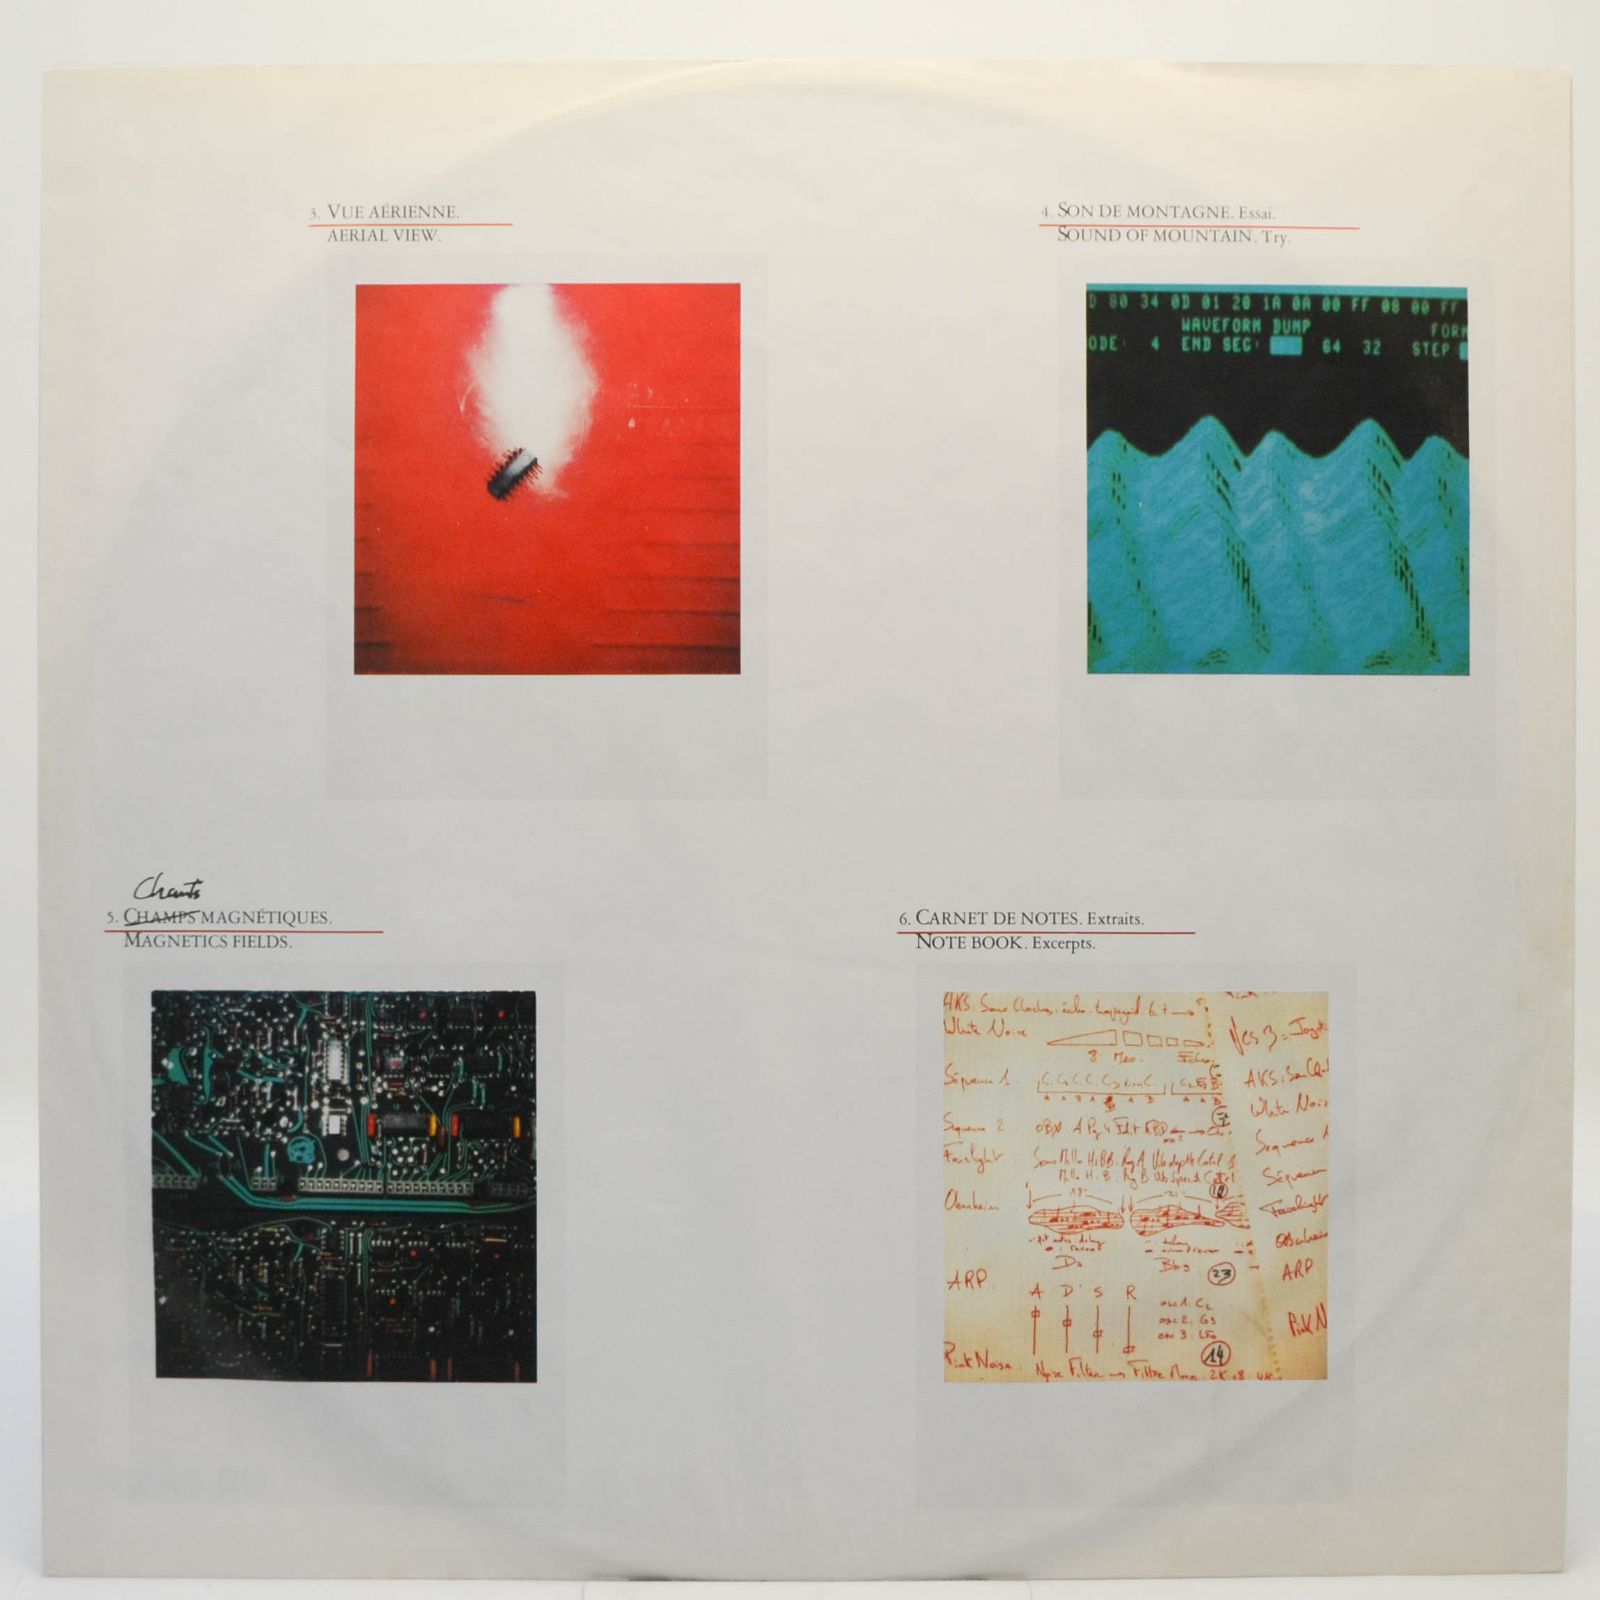 Jarre — Magnetic Fields, 1981